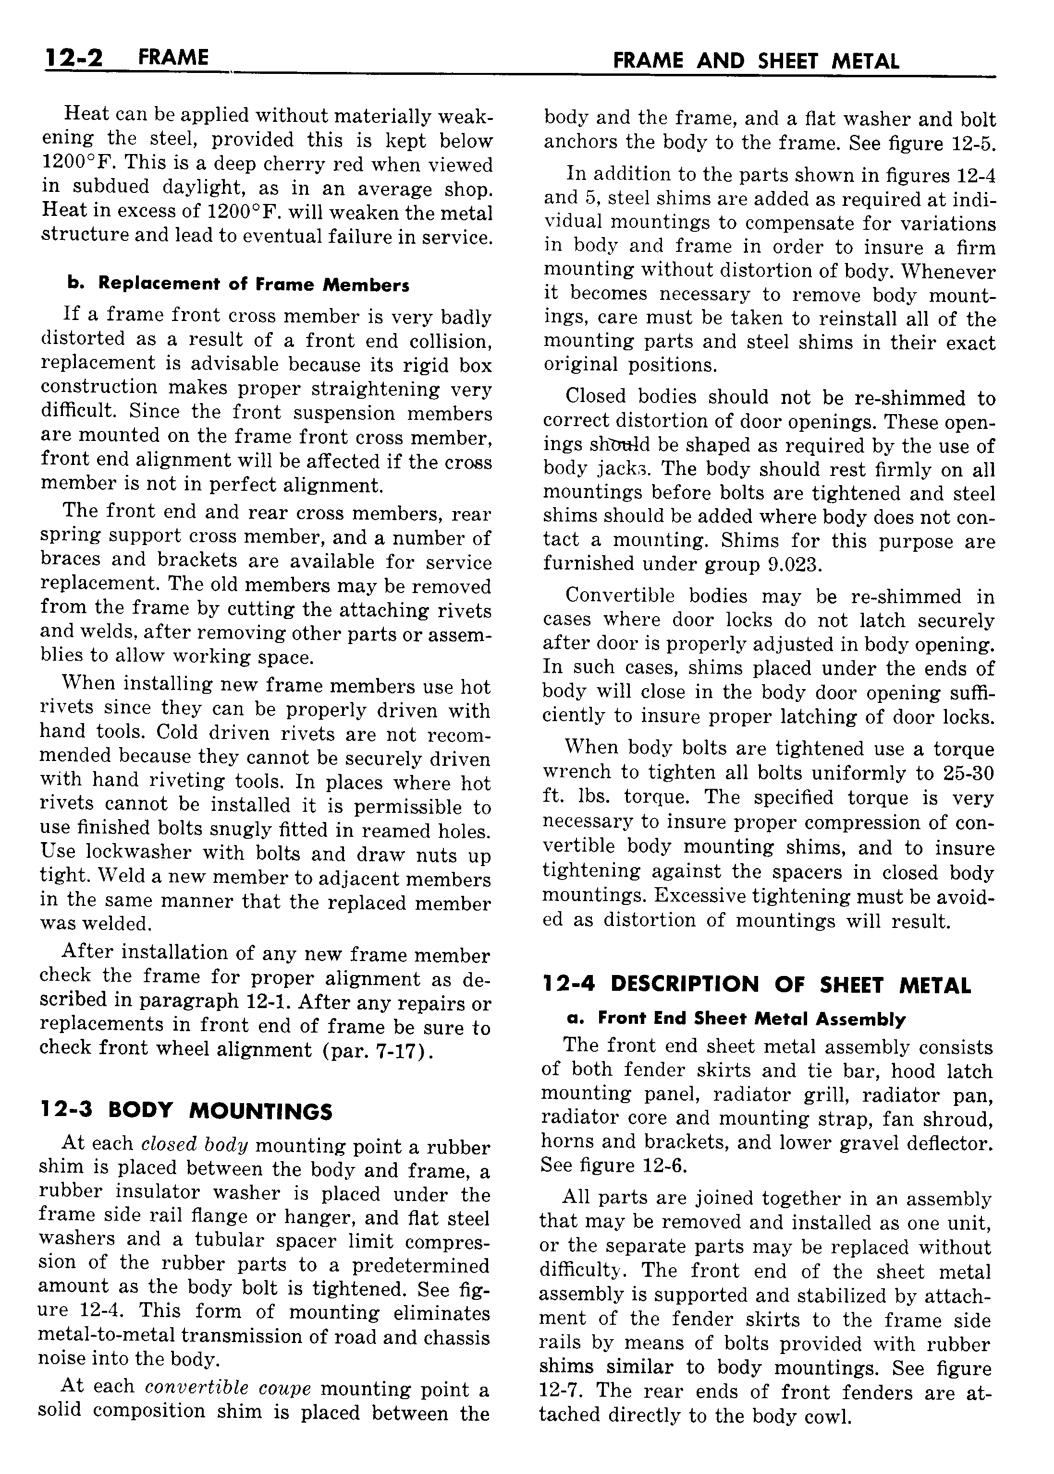 n_13 1957 Buick Shop Manual - Frame & Sheet Metal-002-002.jpg